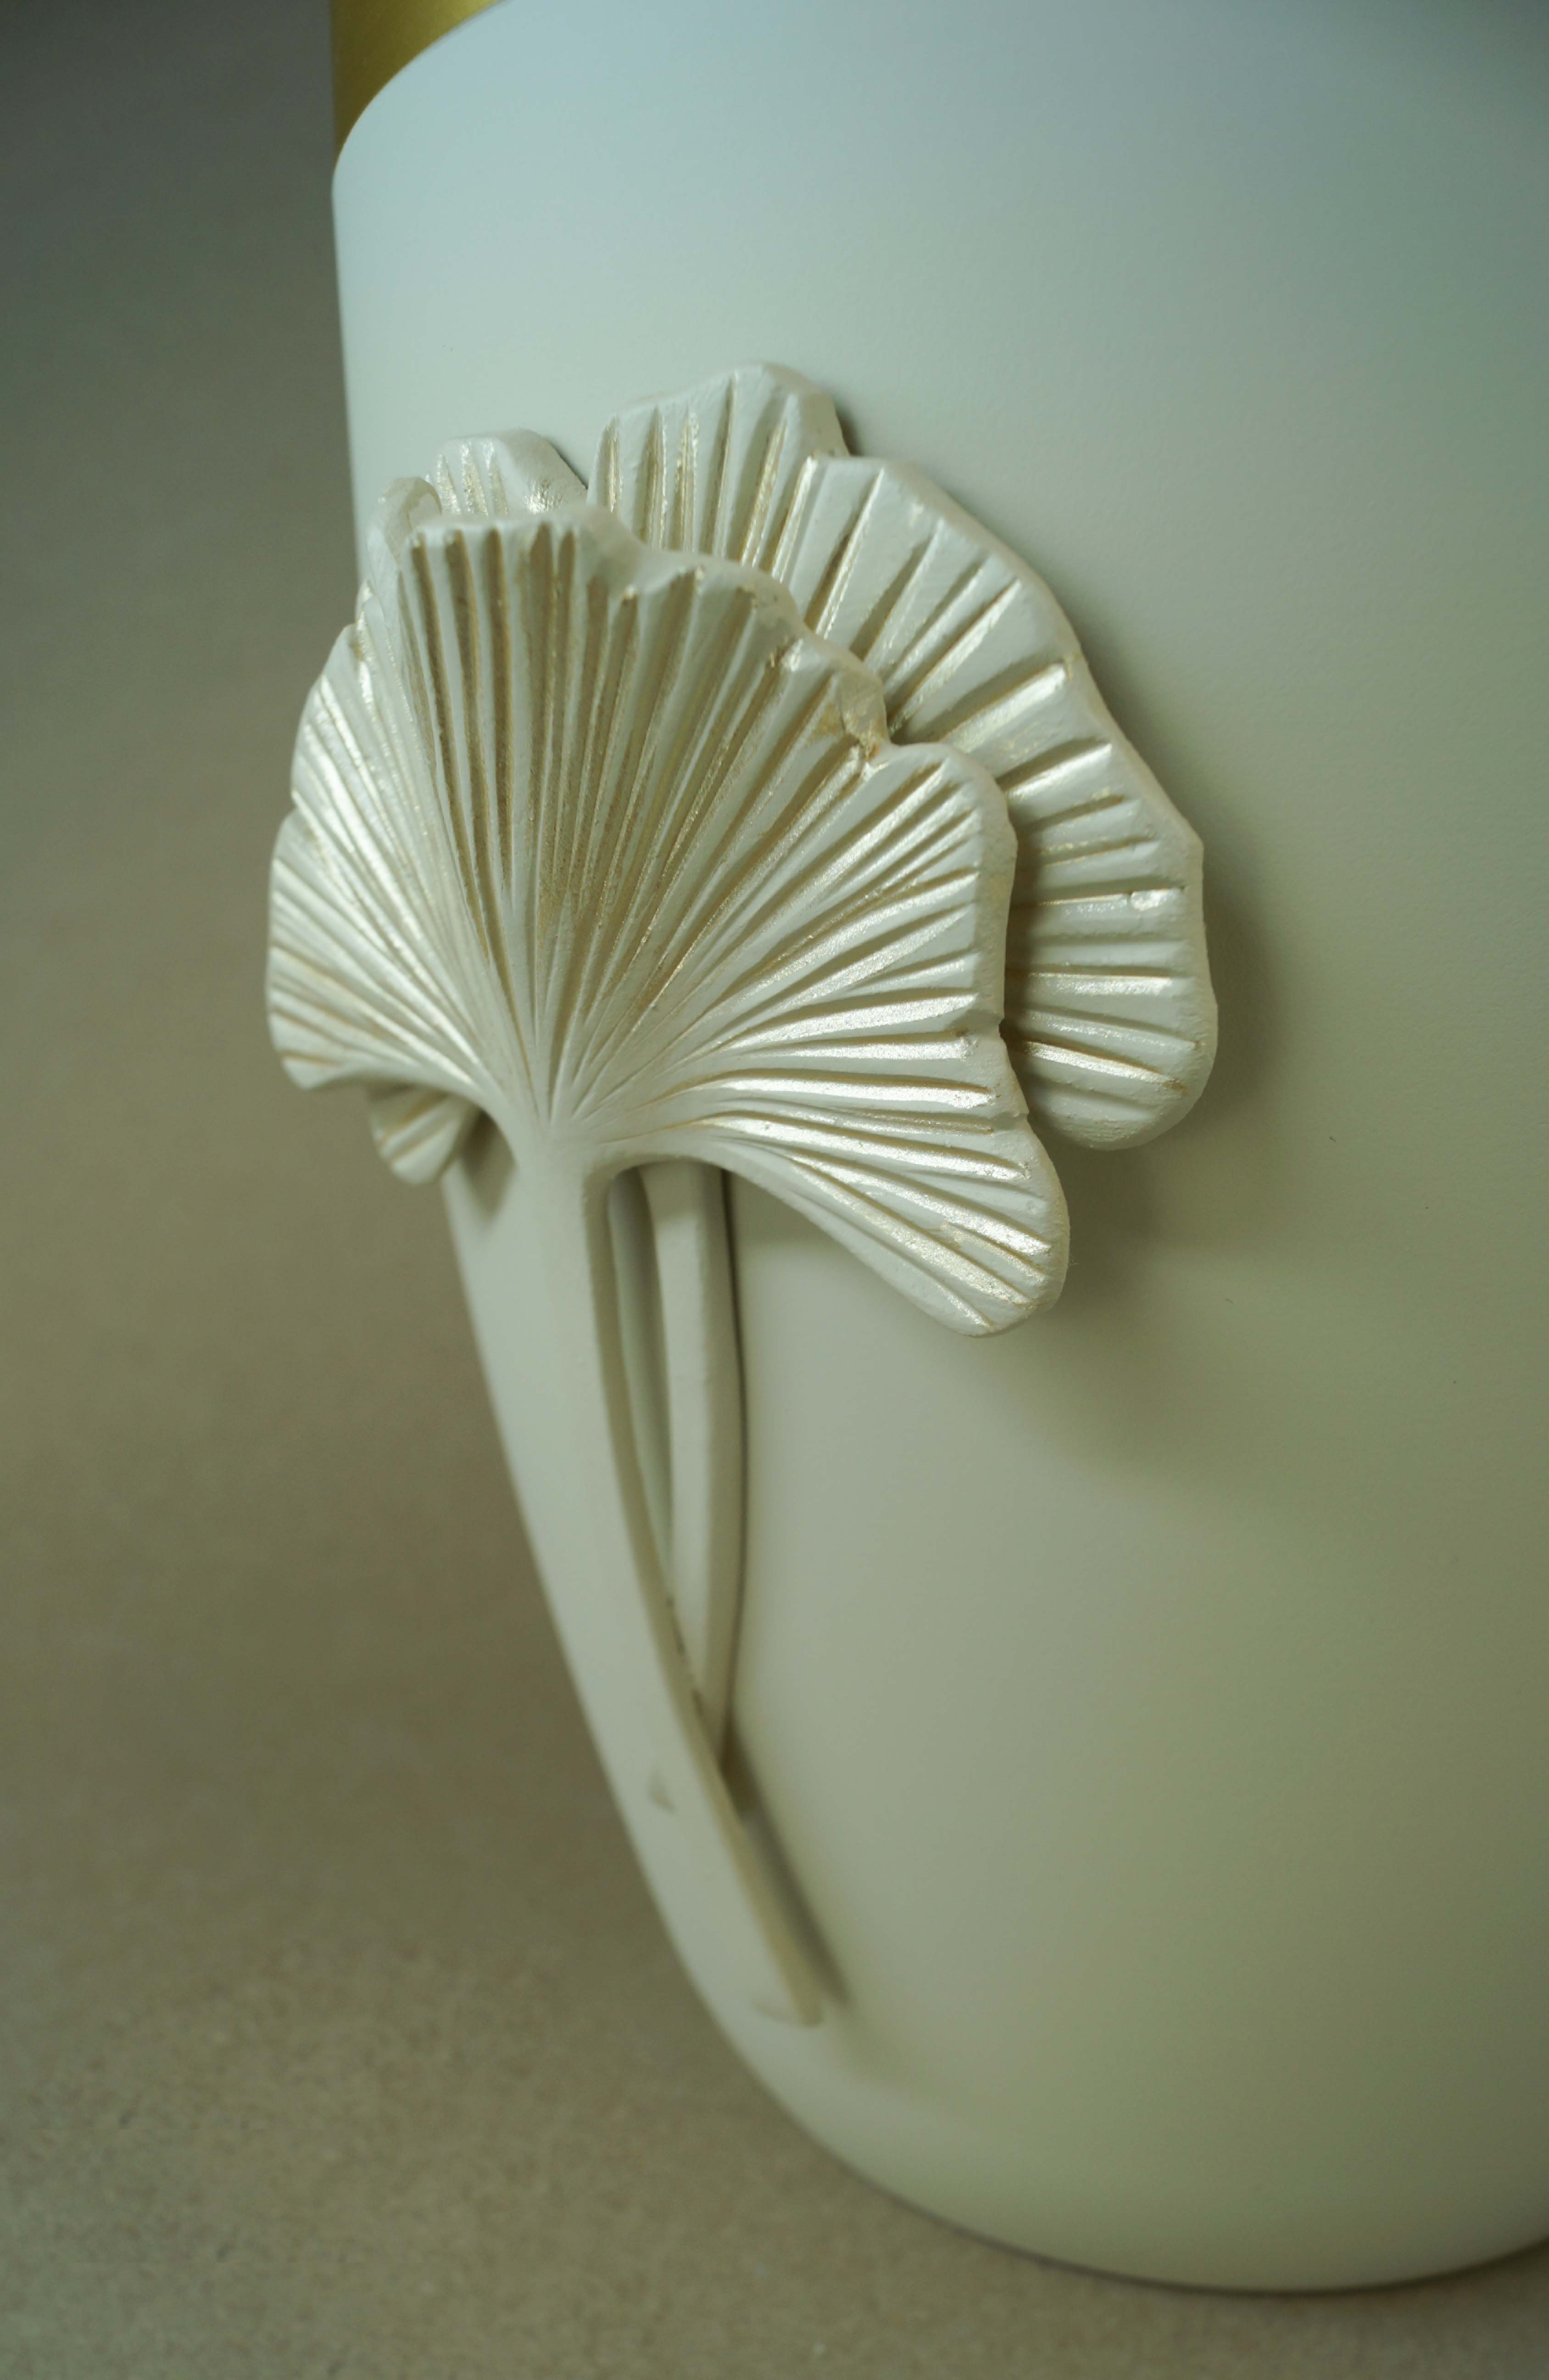 Flüssigholzurne glint-seashell, Design "Ginkgo" in seashell-gold, Goldband ge.